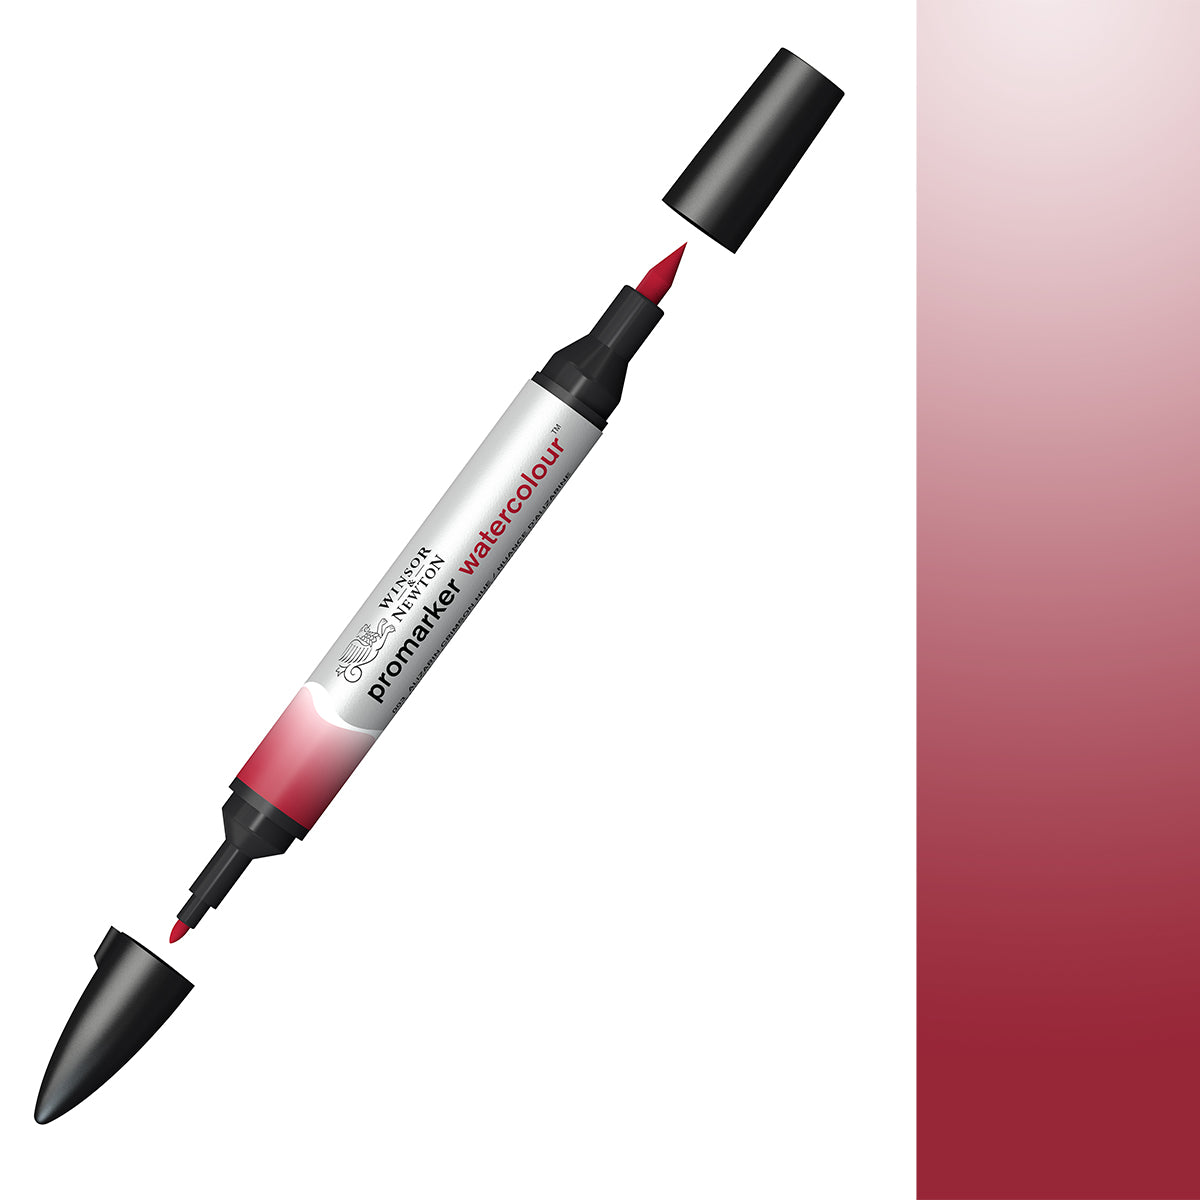 Winsor & Newton - Promarker Watercolour - Alizarin Crimson Hue 003